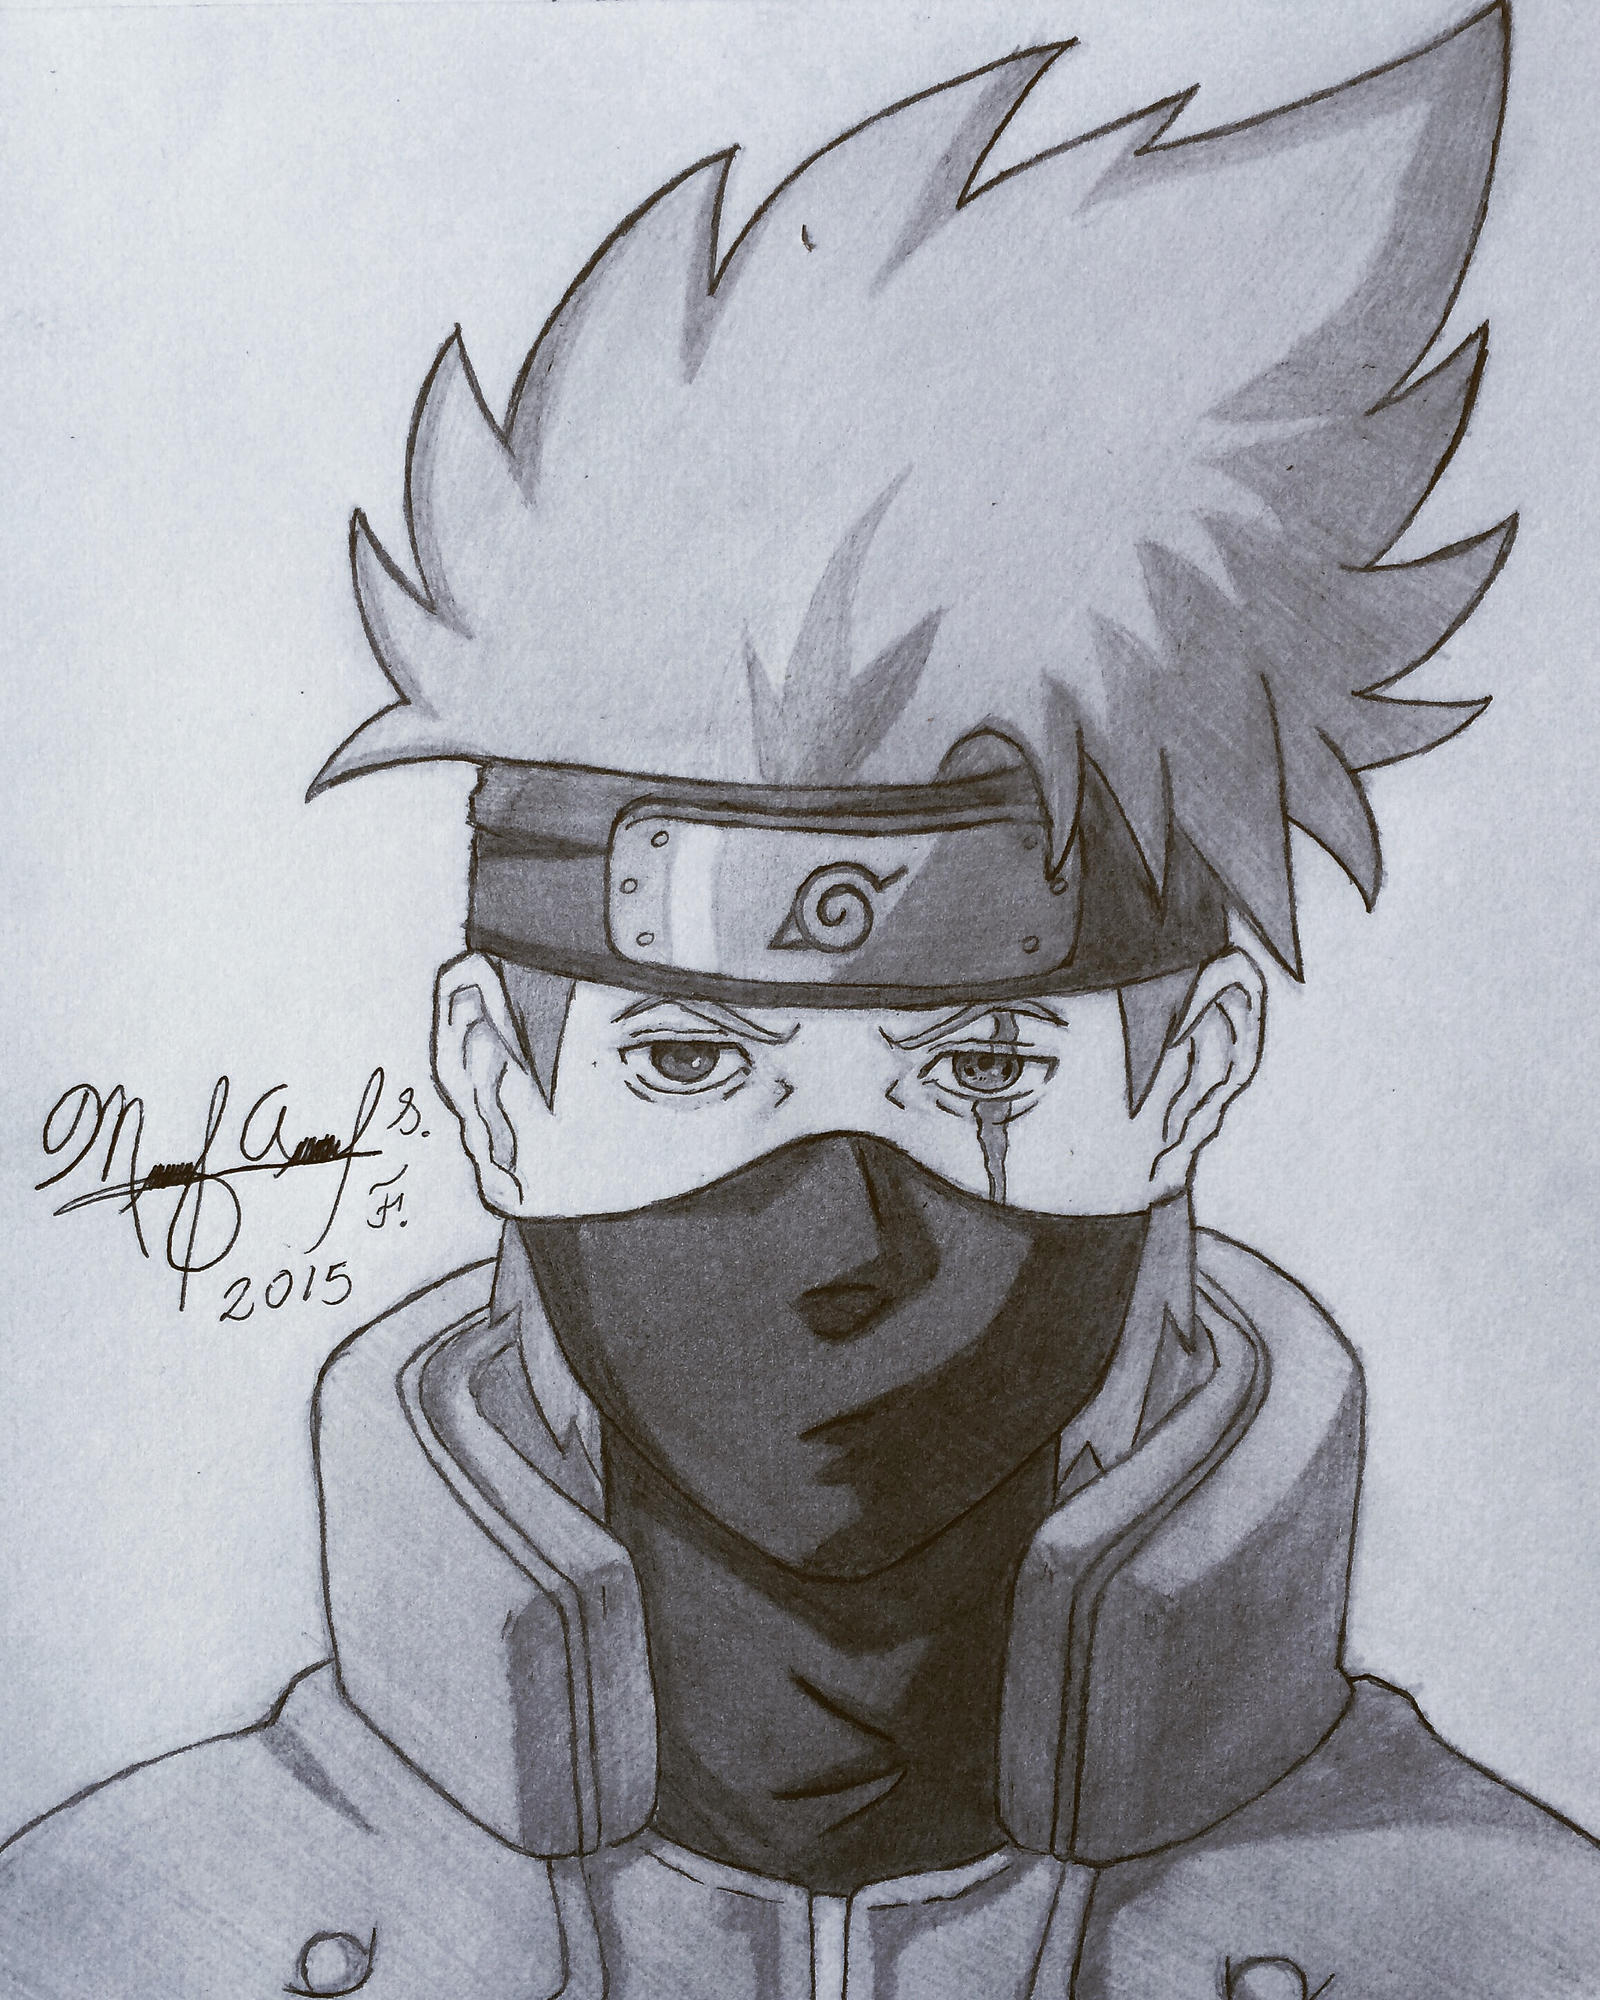 How to Draw Kakashi Hatake, Naruto